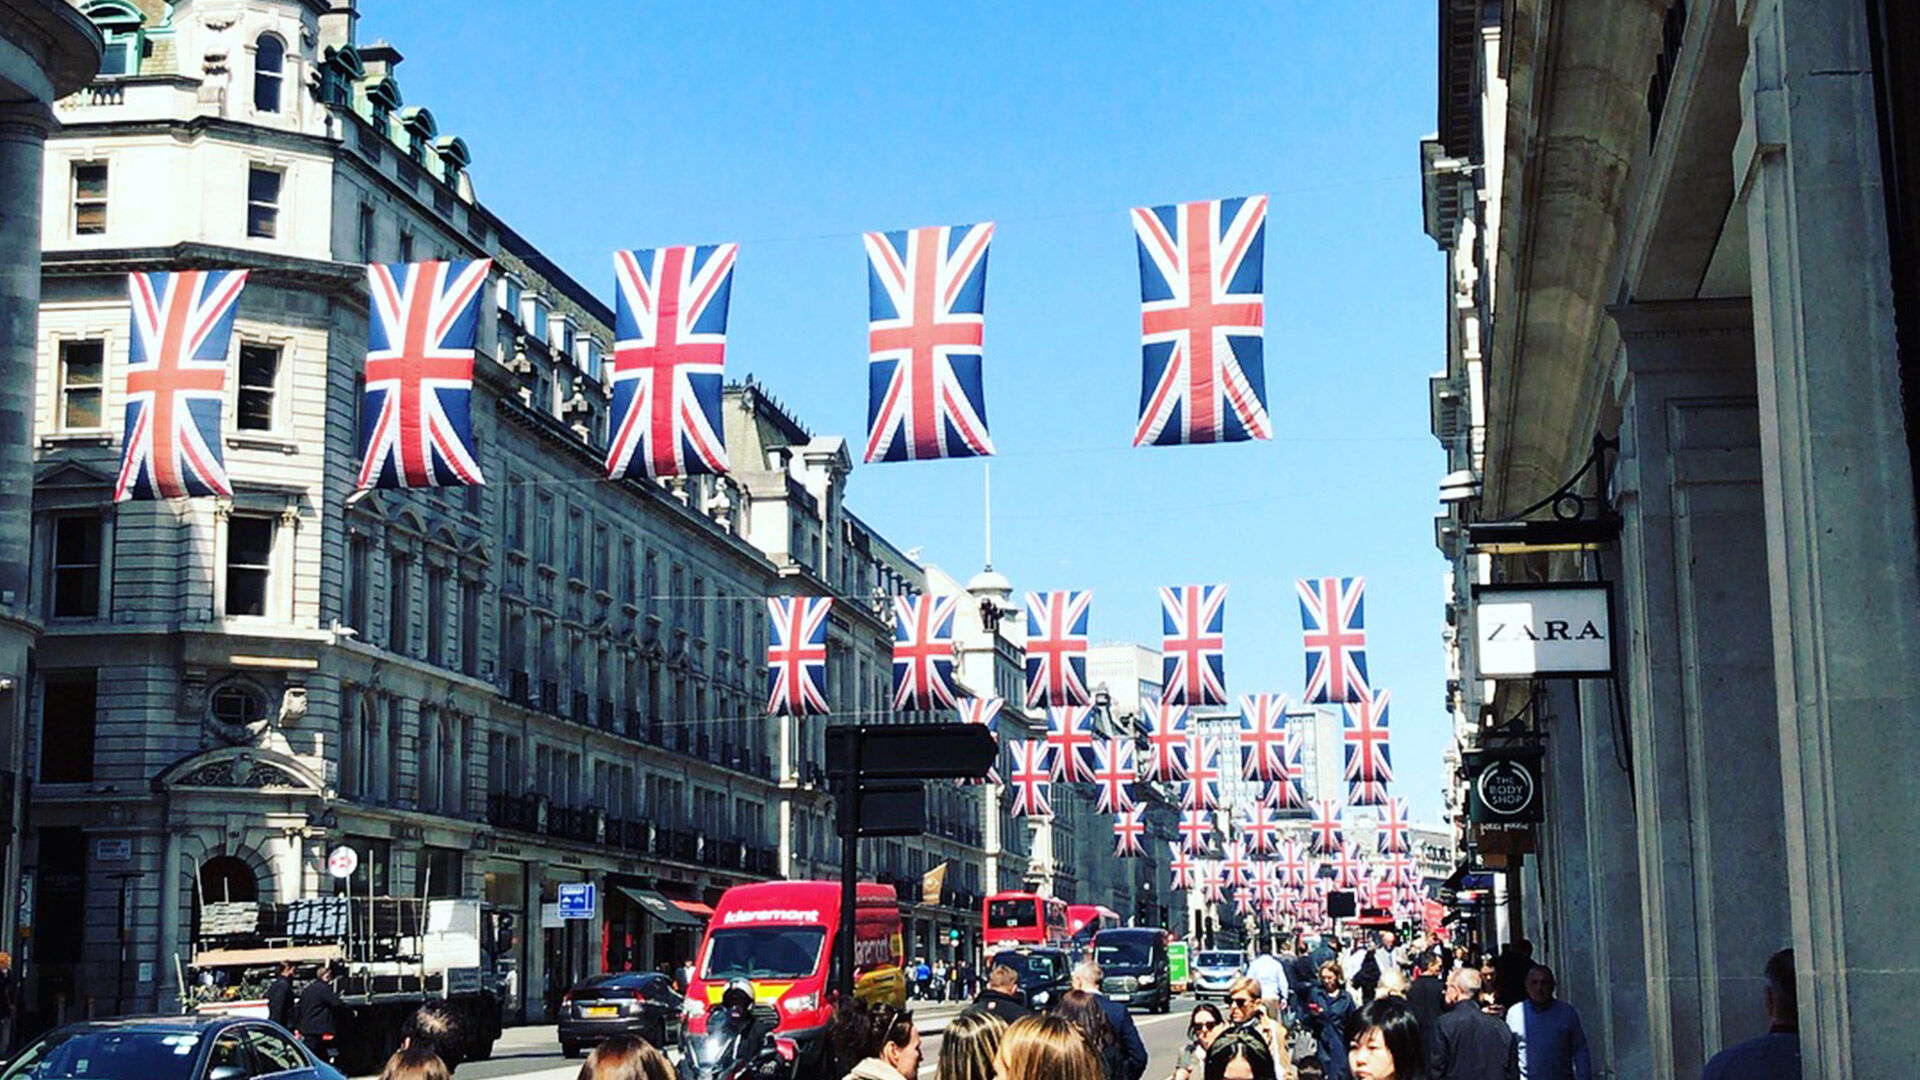 Des drapeaux britanniques décorent une rue animée de Londres, indiquant une célébration ou un événement national, sous un ciel bleu dégagé.